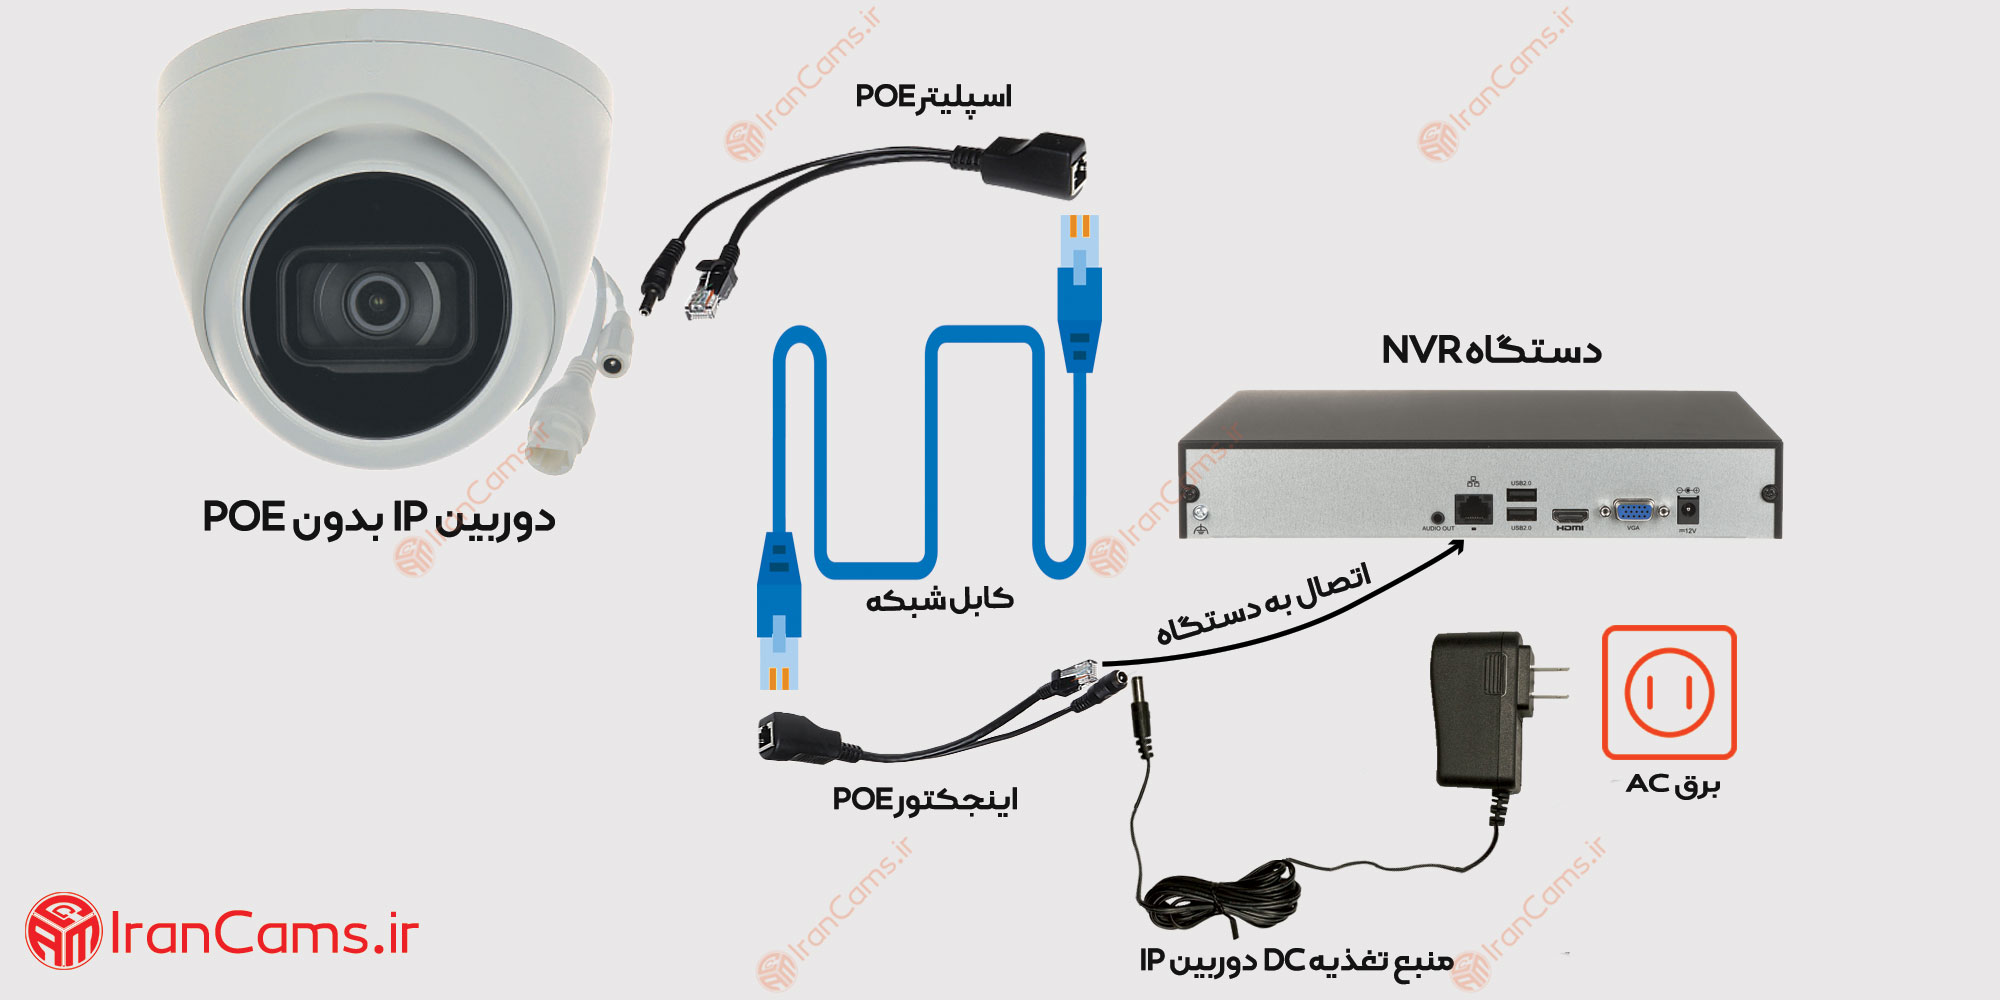 مراحل نصب دوربین IP بدون POE توسط اینجکتور POE